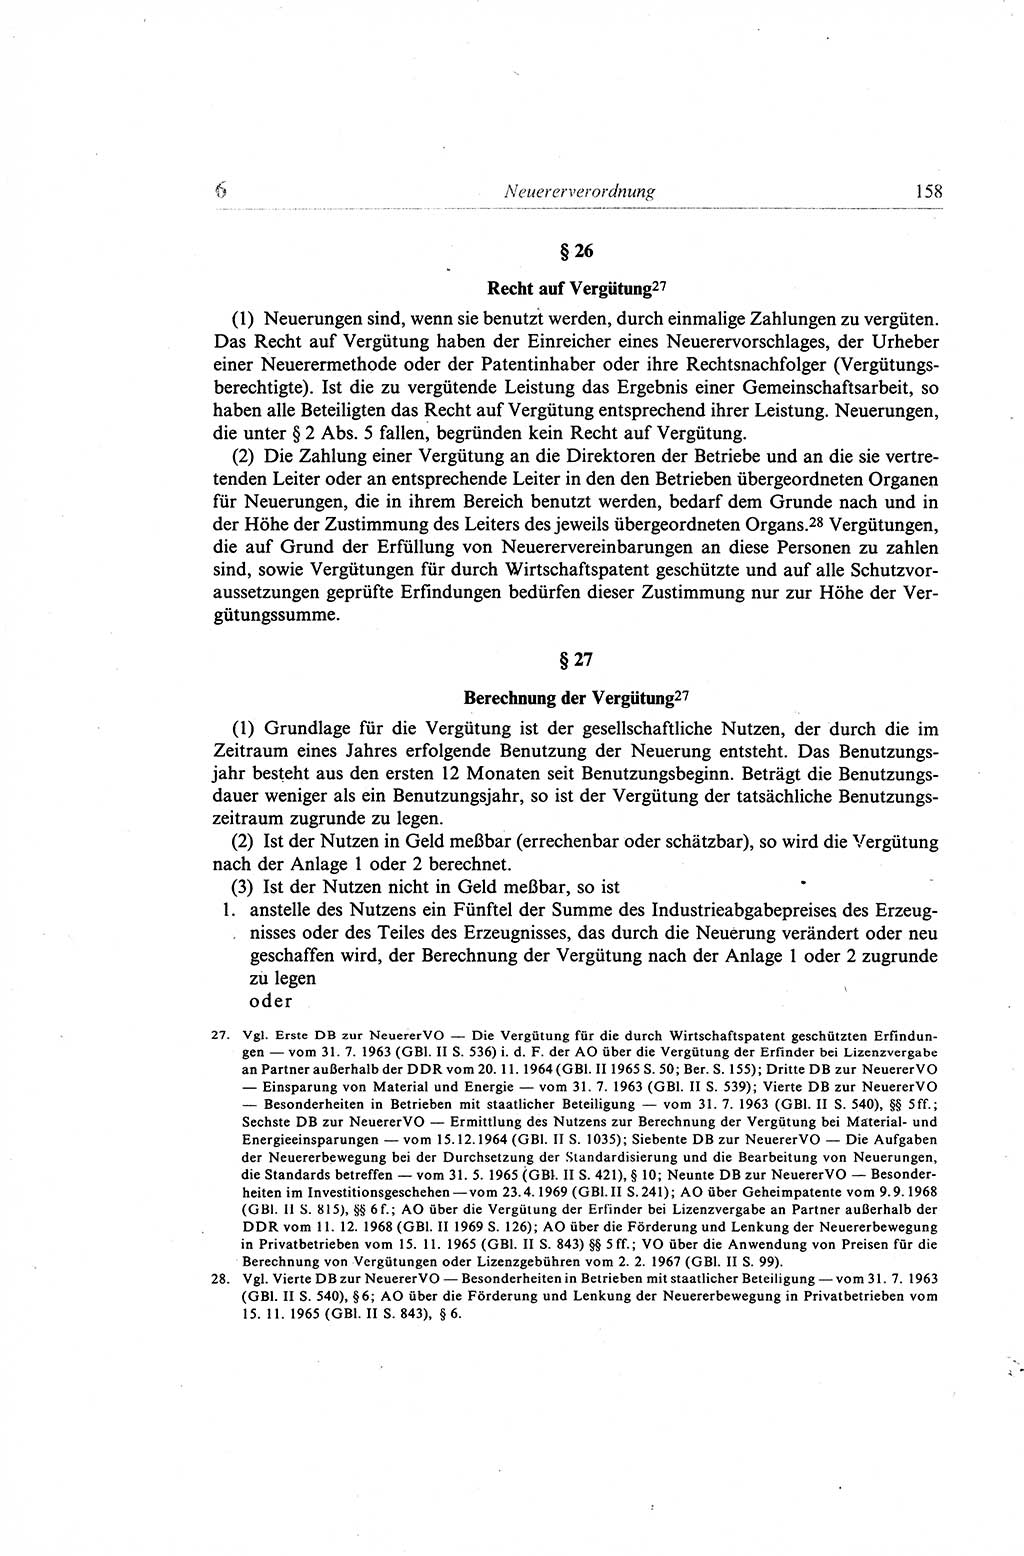 Gesetzbuch der Arbeit (GBA) und andere ausgewählte rechtliche Bestimmungen [Deutsche Demokratische Republik (DDR)] 1968, Seite 158 (GBA DDR 1968, S. 158)